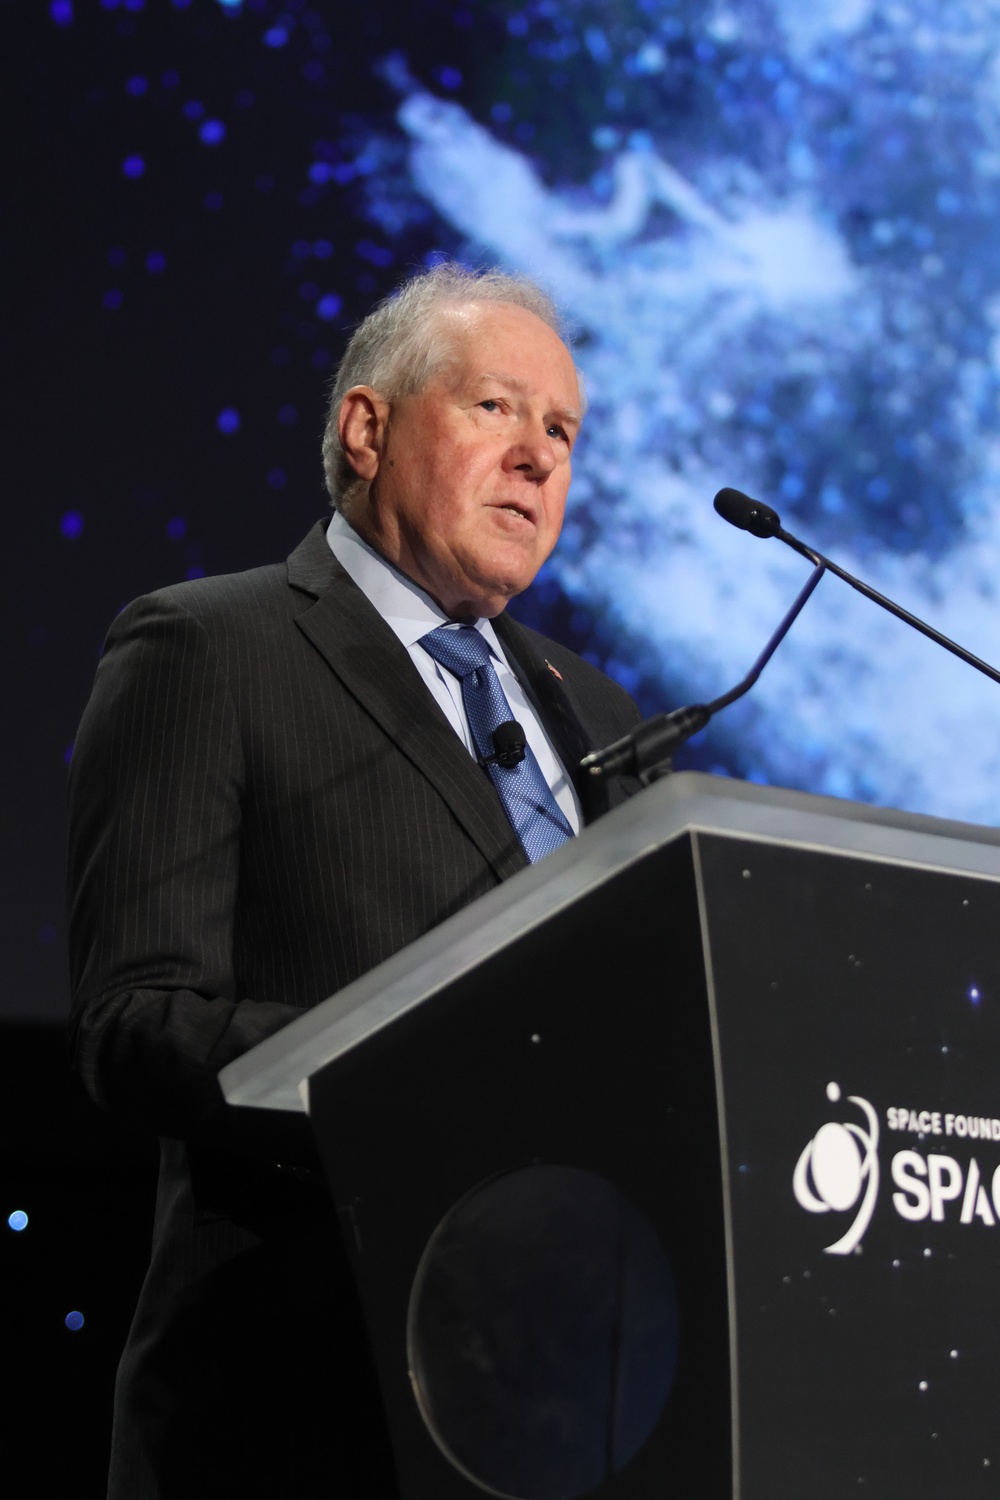 SecAF speaks at 39th Space Symposium